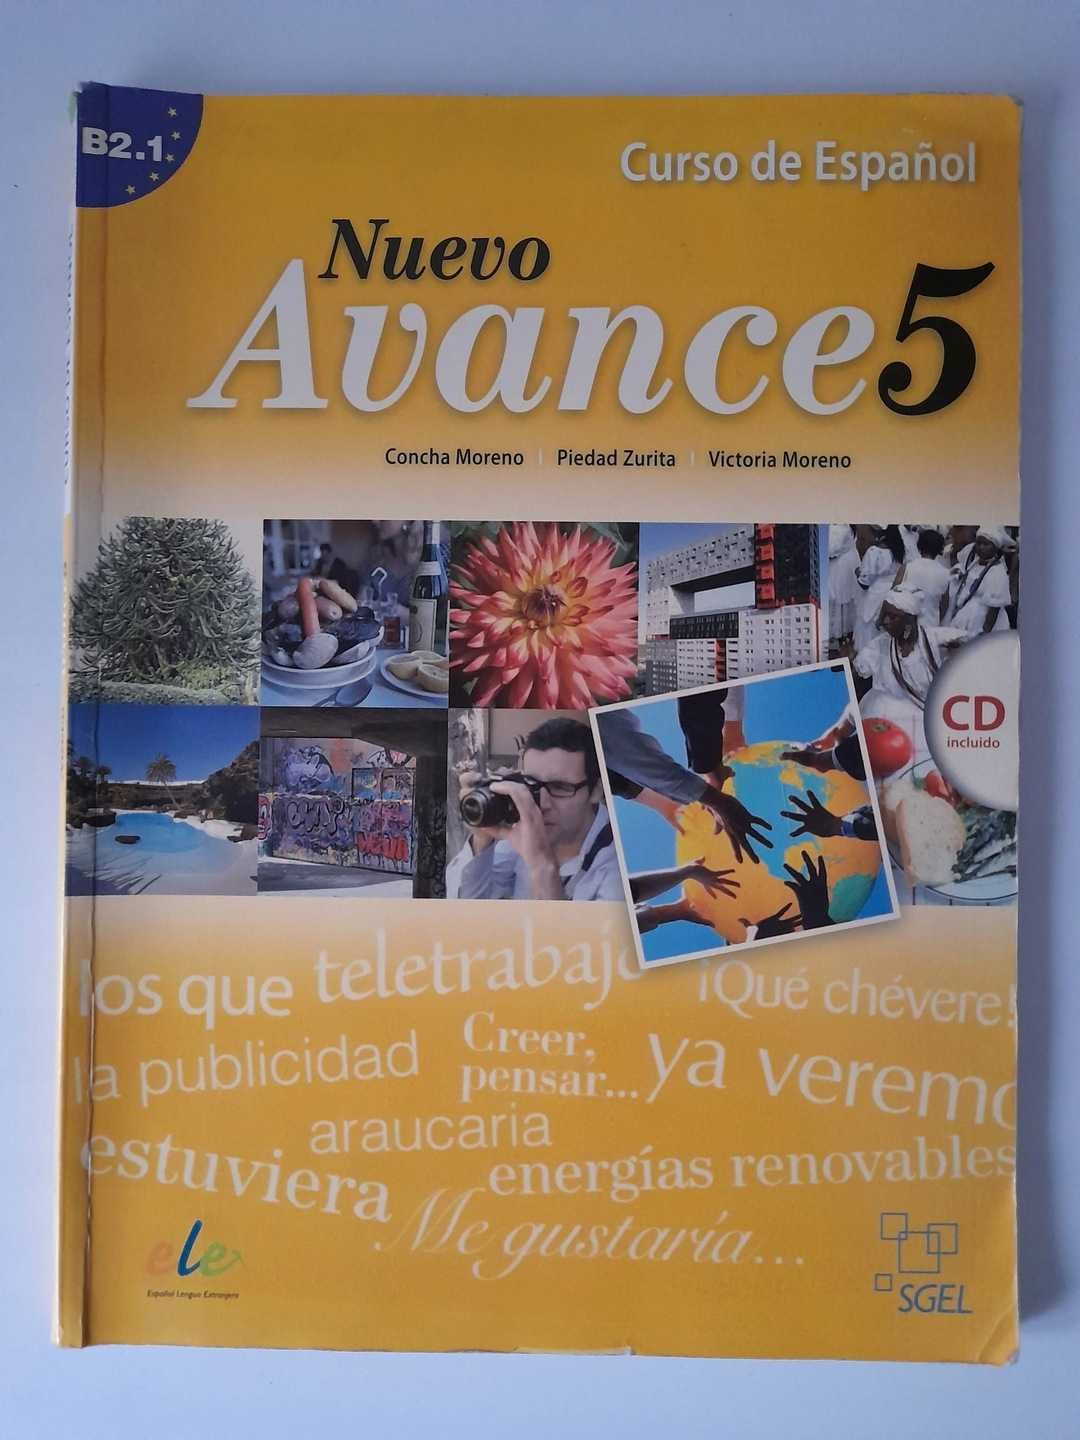 Nuevo Avance 5 Curso de Espanol + płyta CD Concha Moreno